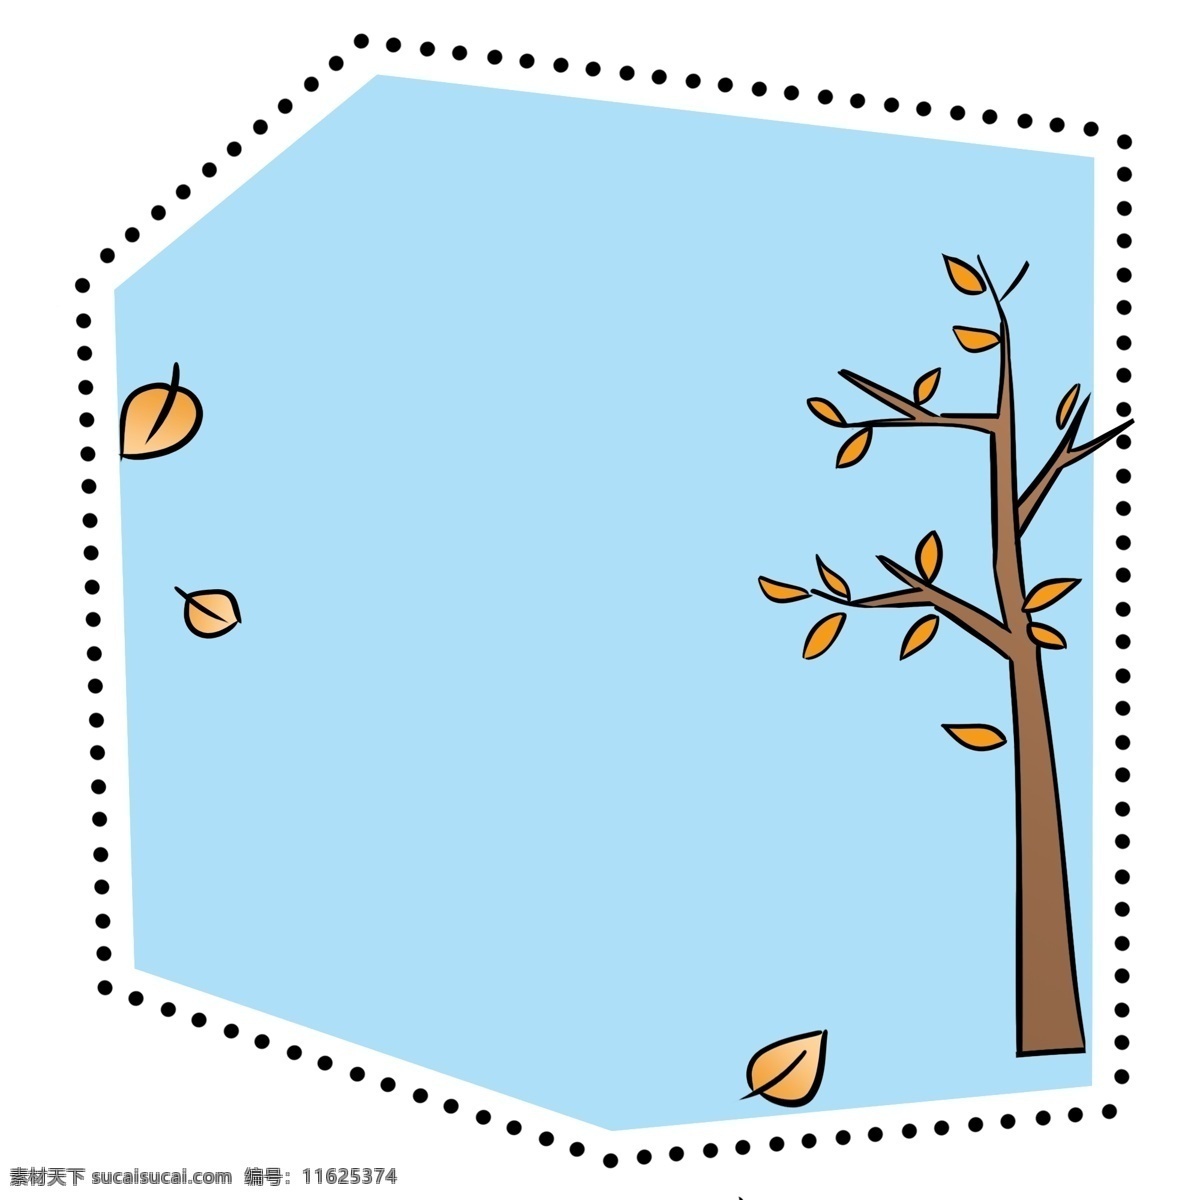 霜降 蓝 底 虚线 边框 插画 手绘 秋季 秋风 蓝底虚线 树木落叶